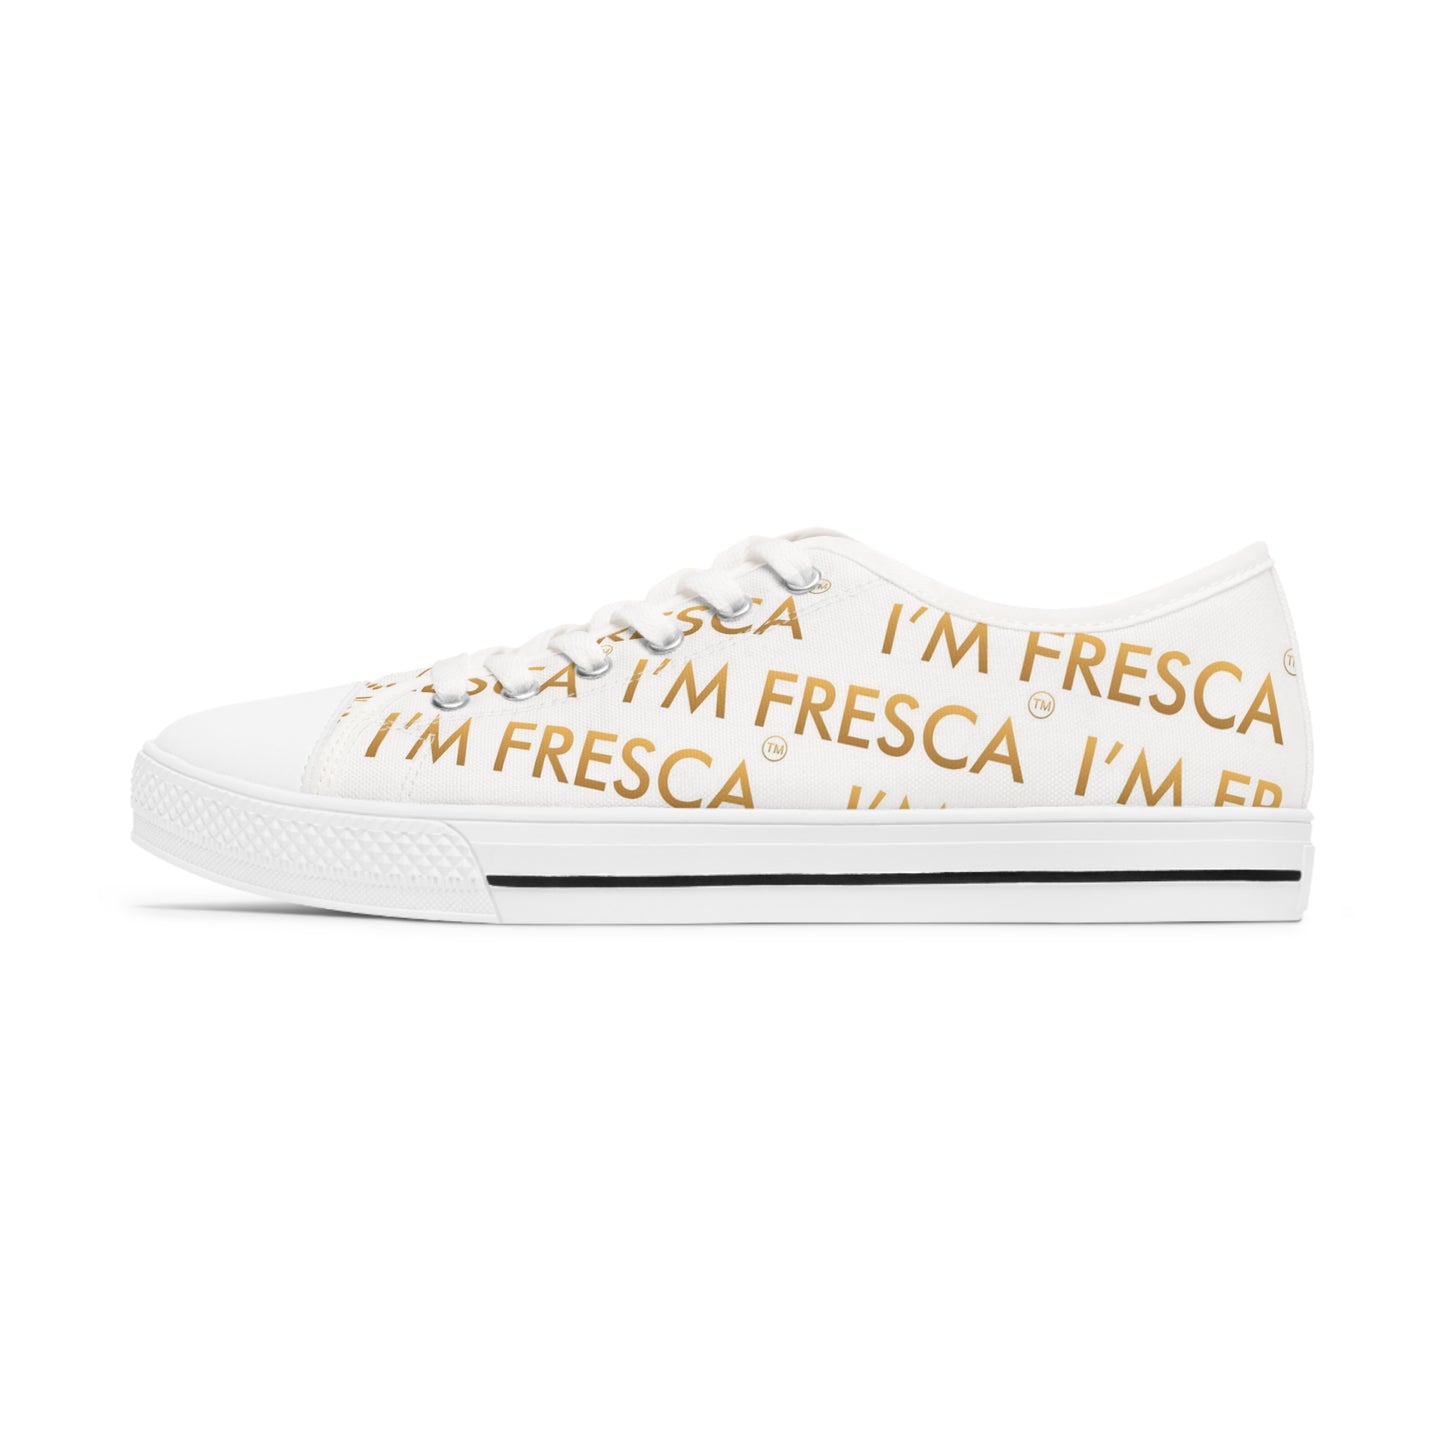 I'M FRESCA™ *SIGNATURE EDITION* Zapatillas bajas para mujer